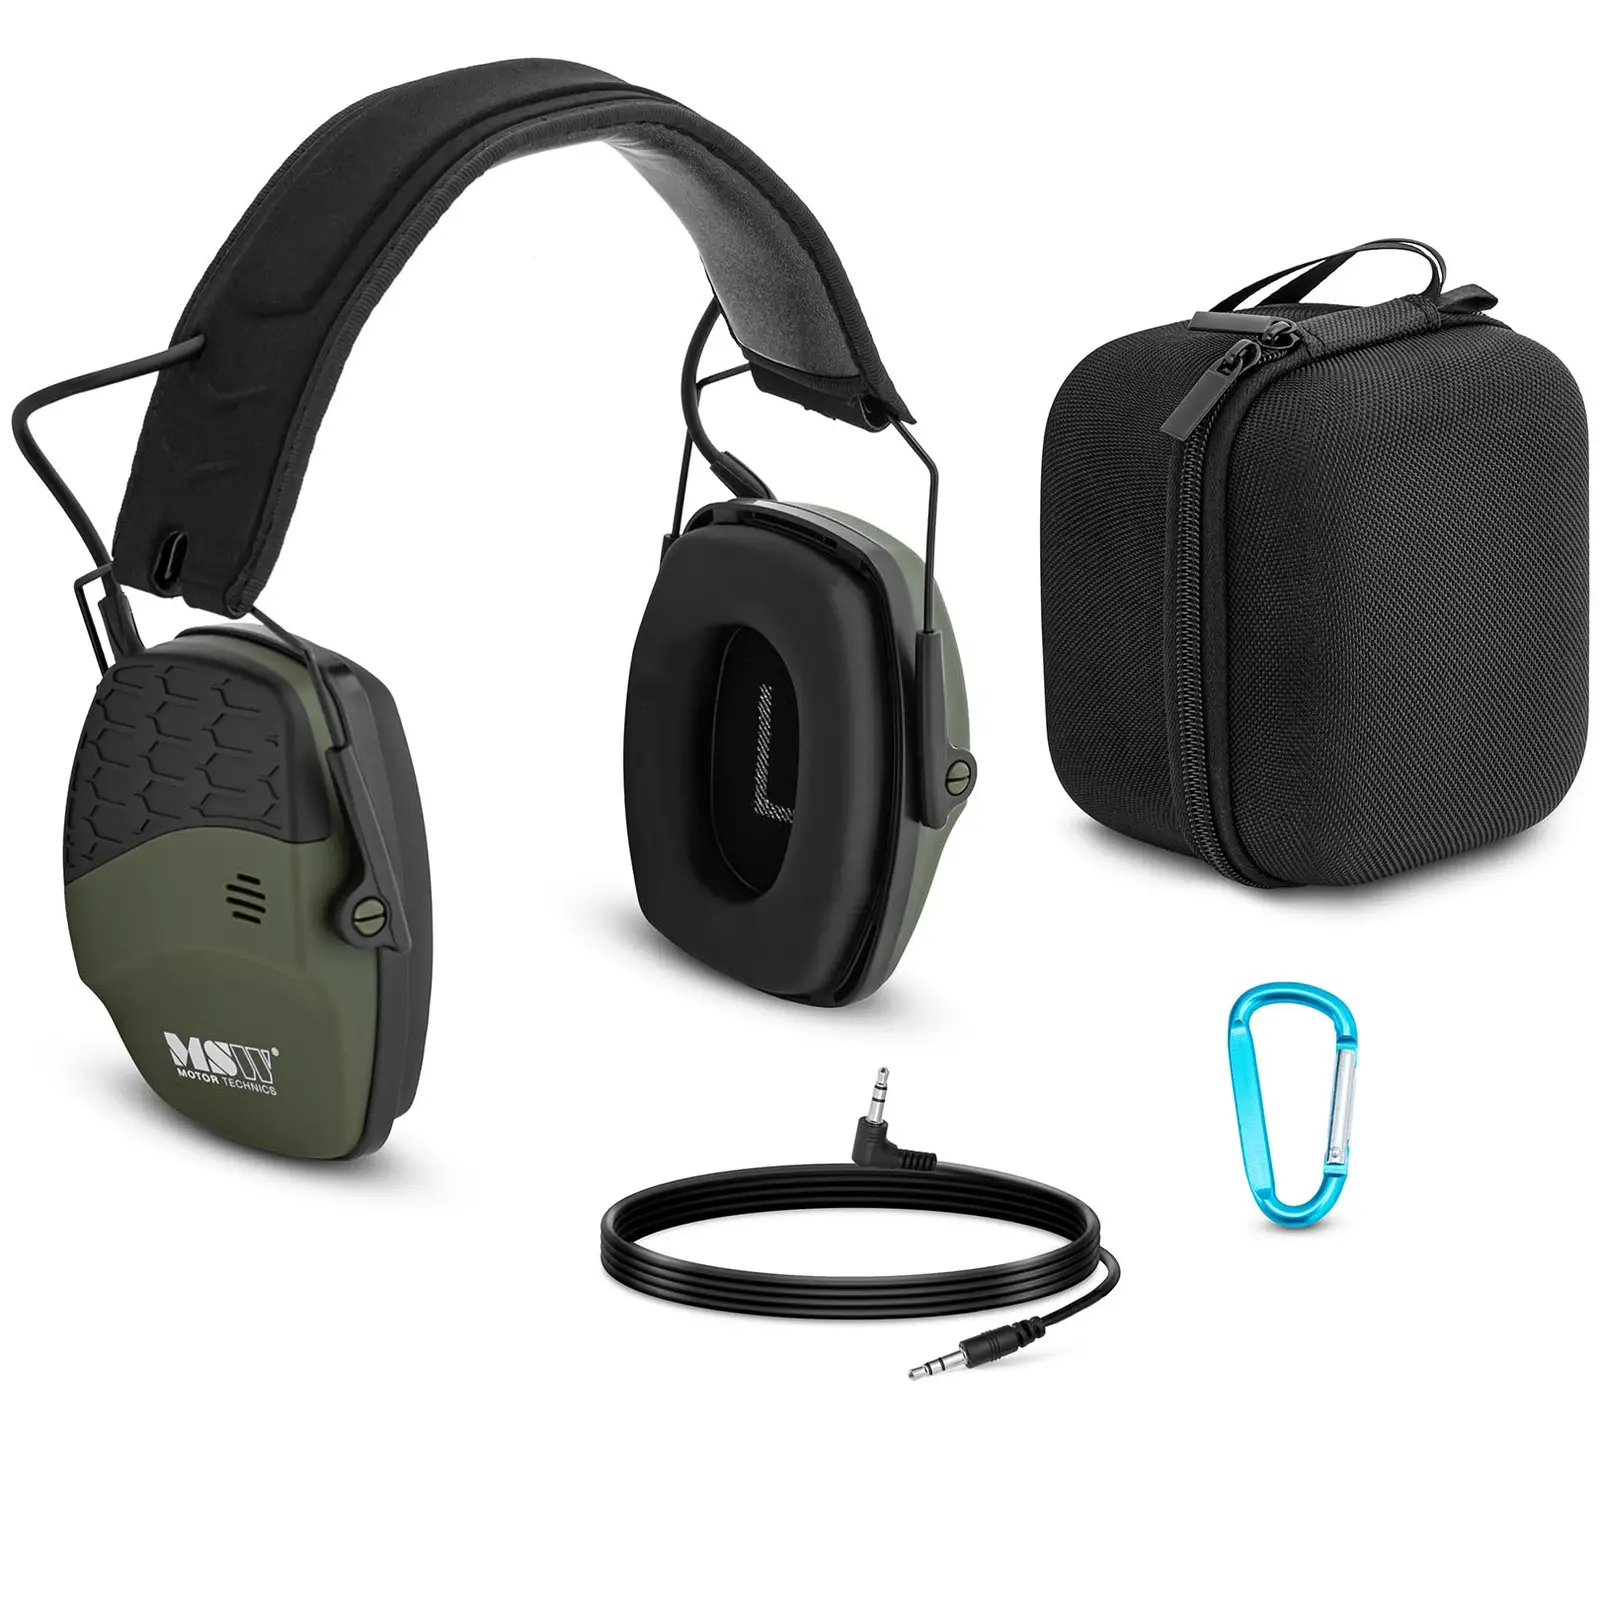 Bluetooth-støyreduserende hodetelefoner - Dynamisk ekstern støykontroll - Grønn